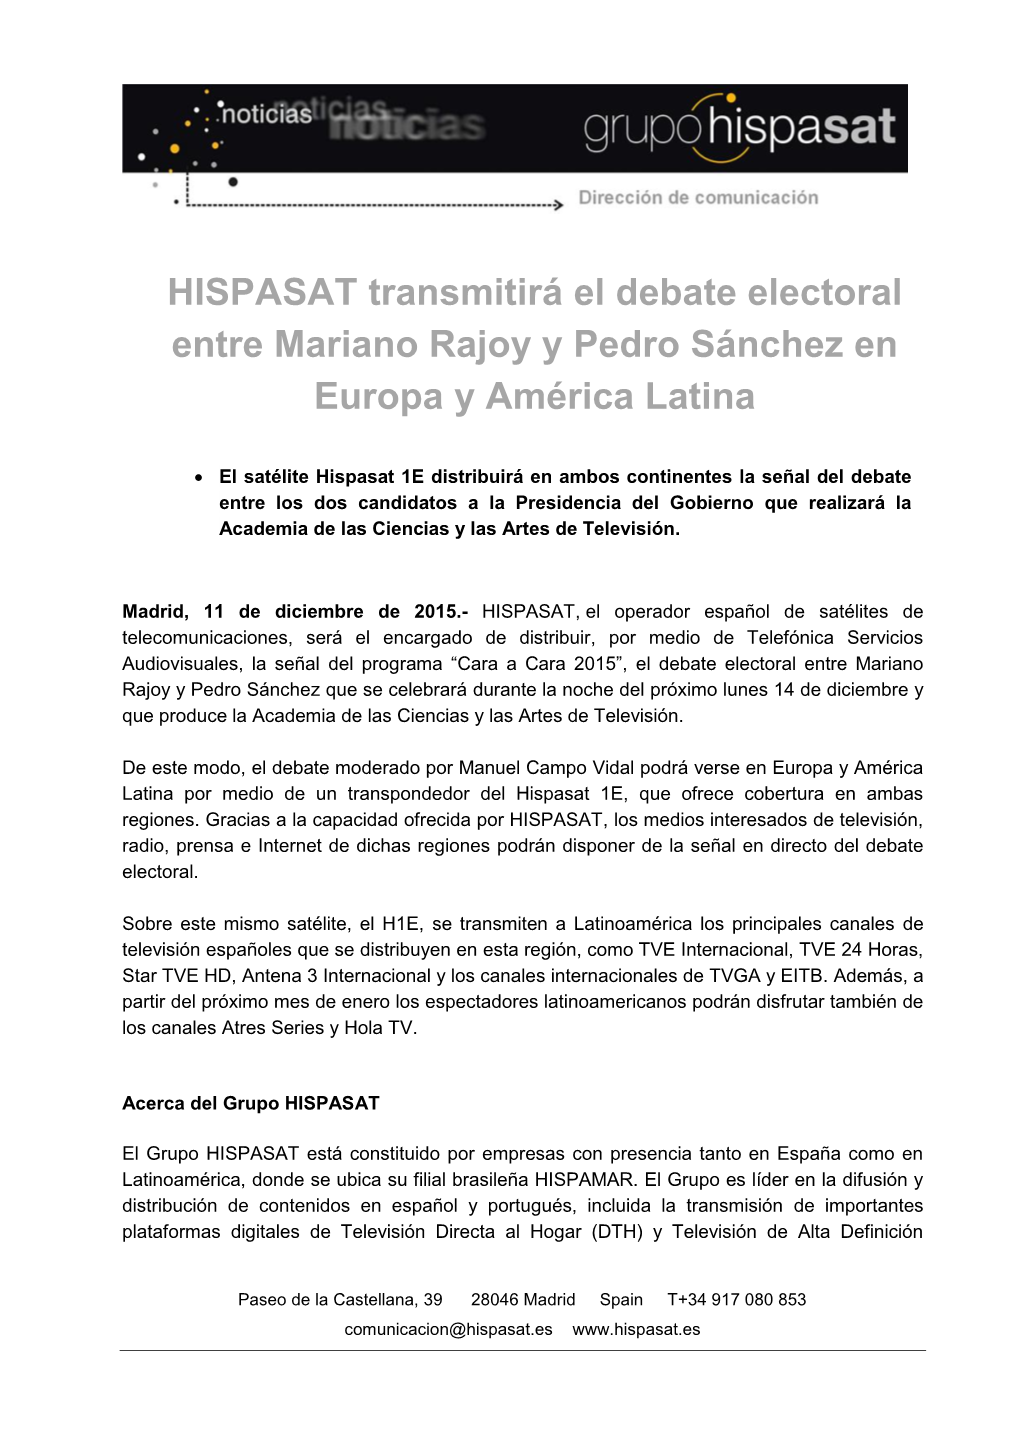 HISPASAT Transmitirá El Debate Electoral Entre Mariano Rajoy Y Pedro Sánchez En Europa Y América Latina